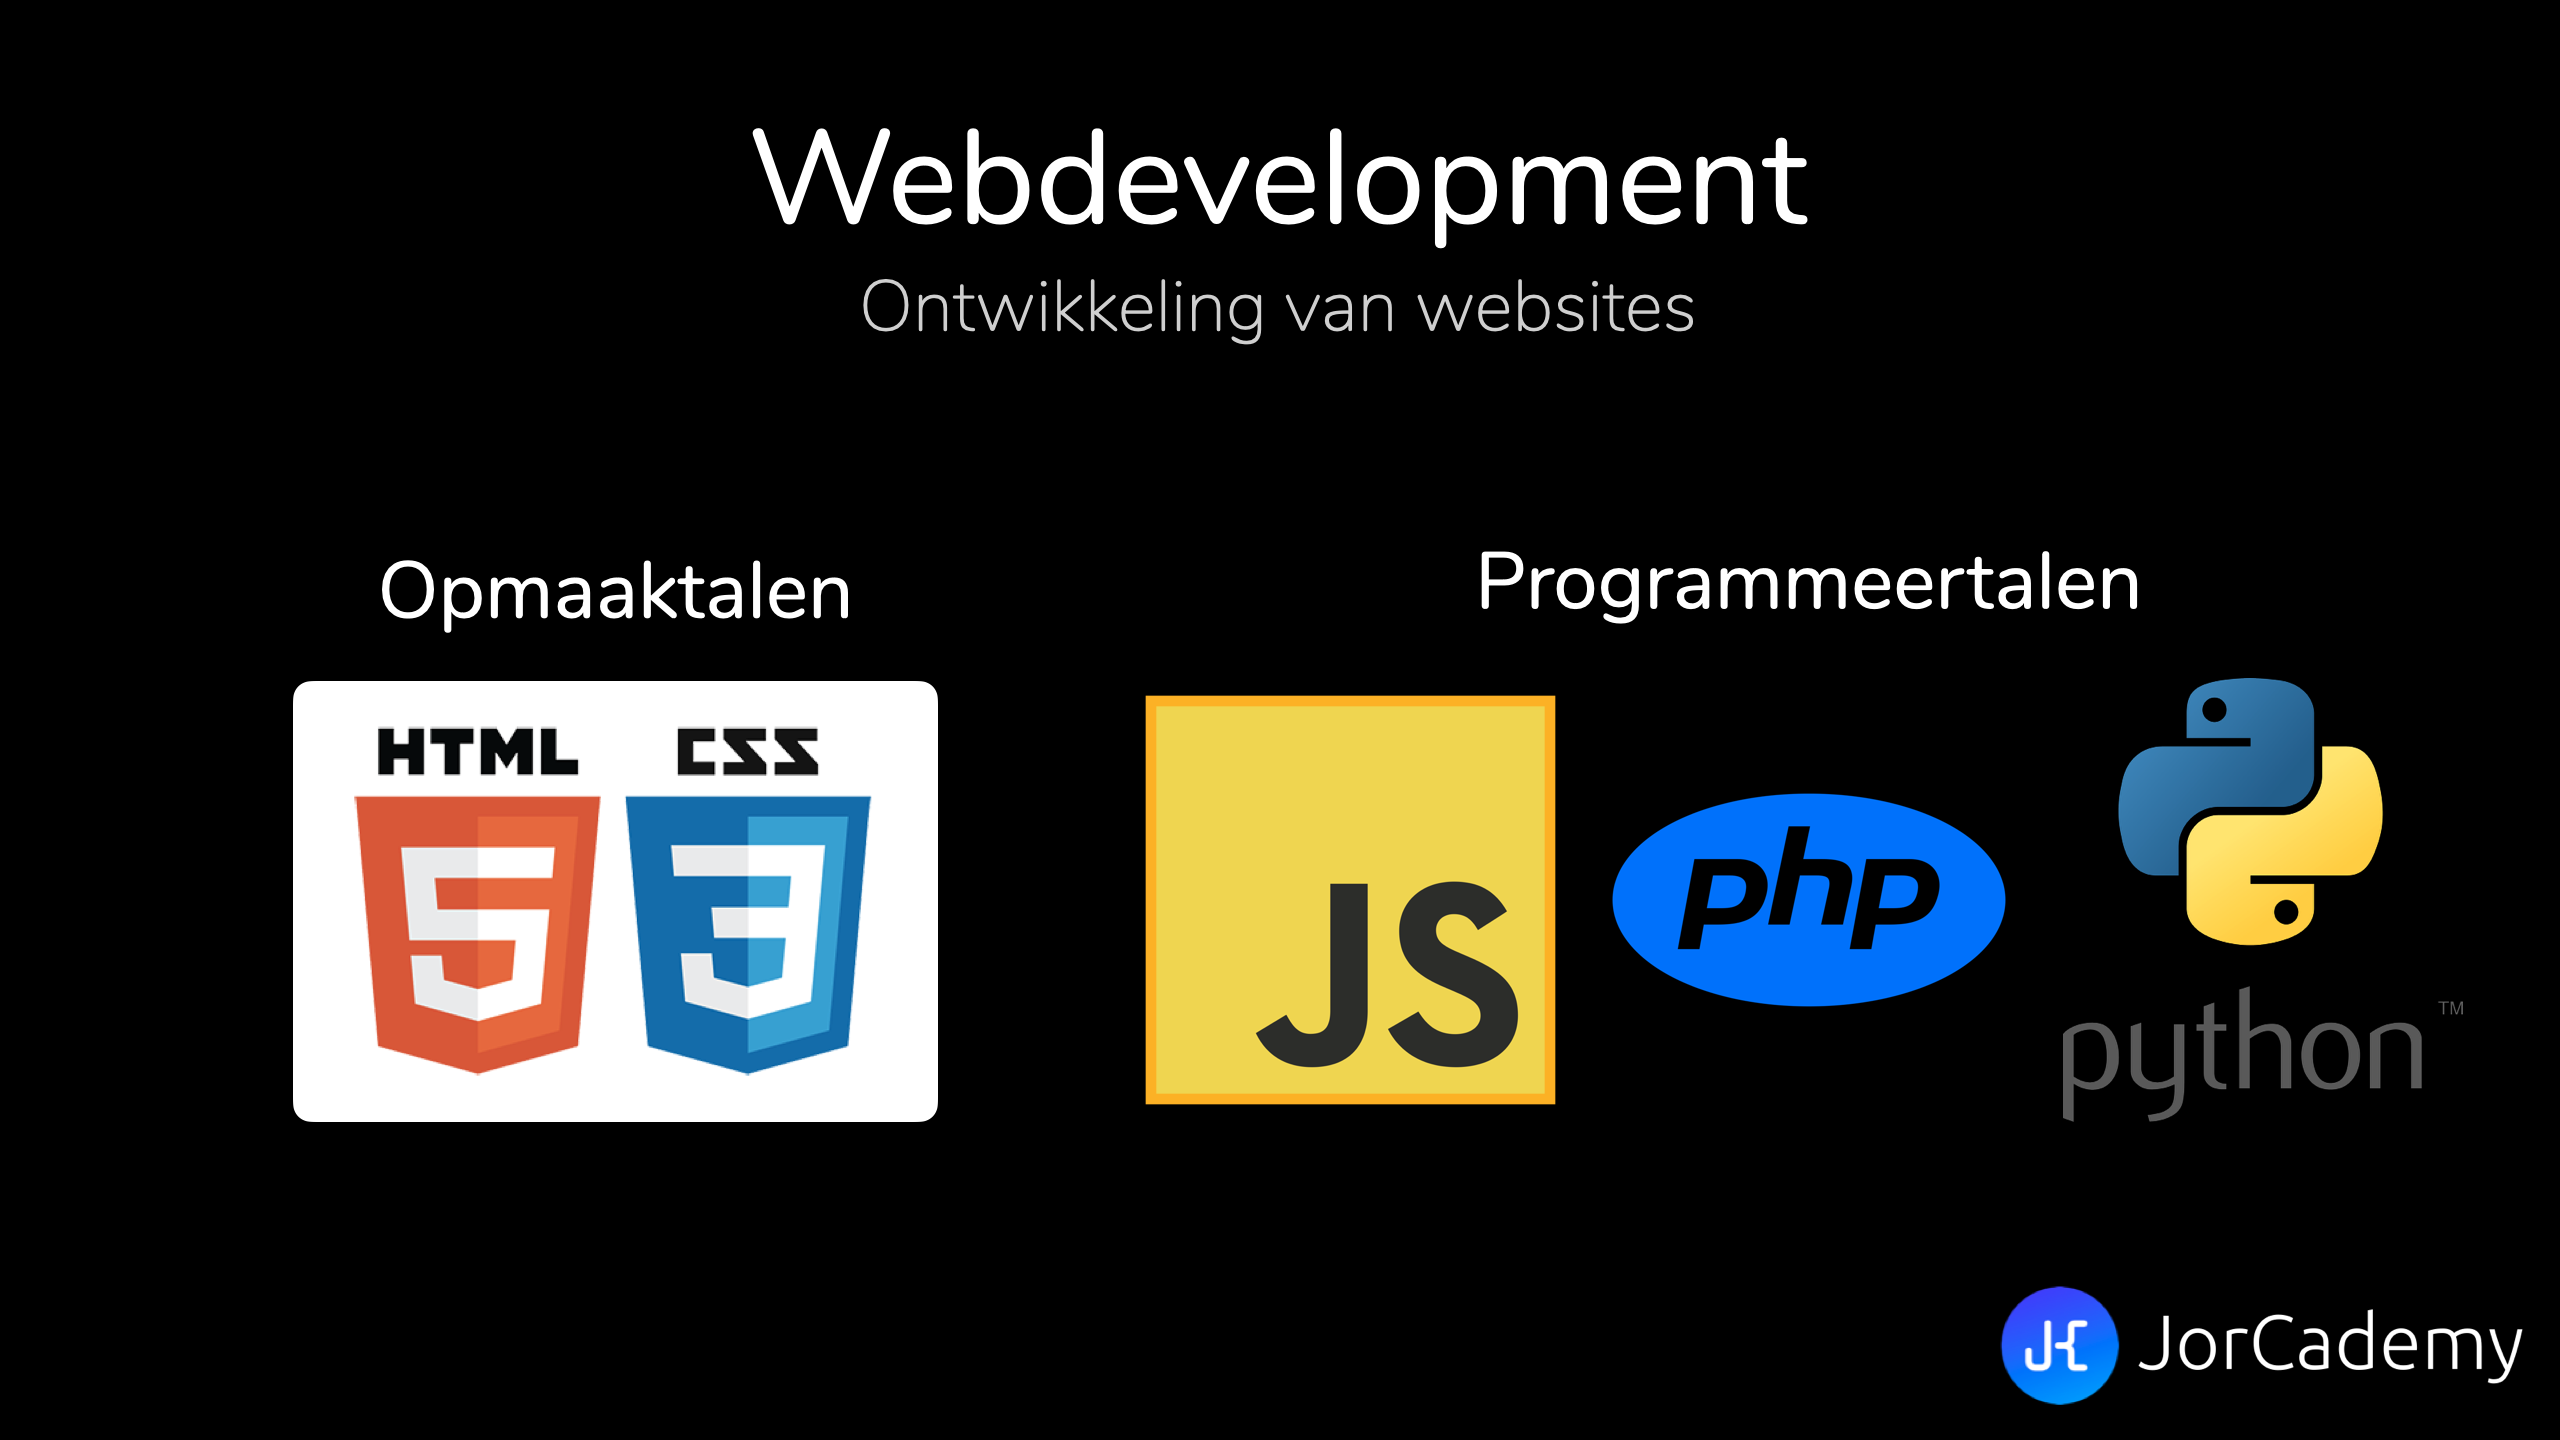 Populaire tools voor webdevelopment.